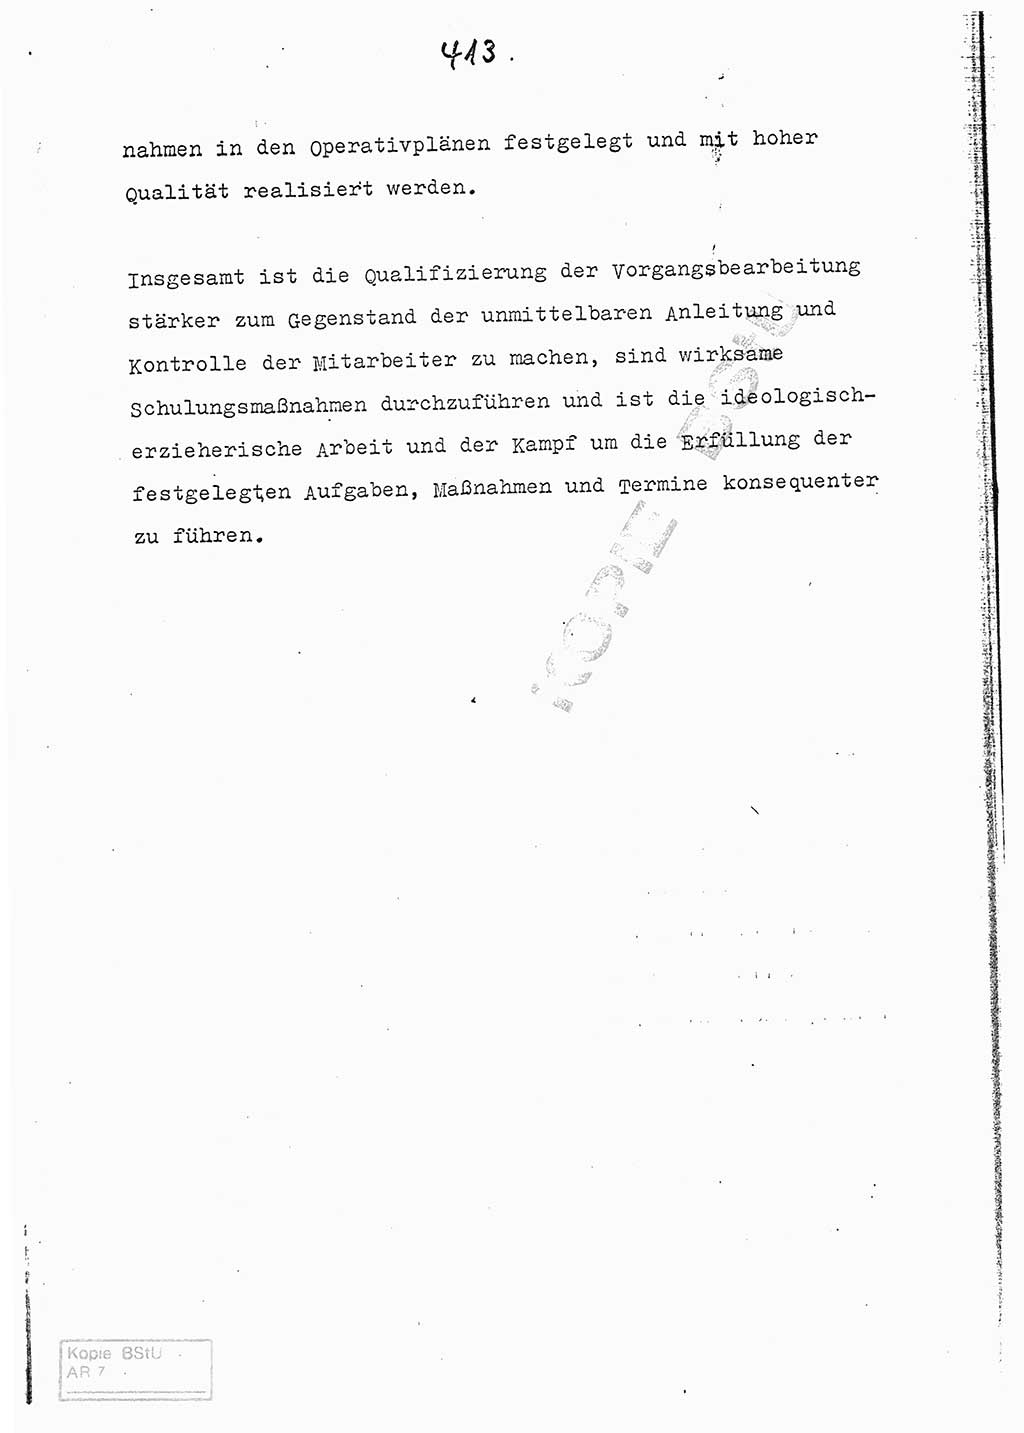 Referat (Entwurf) des Genossen Minister (Generaloberst Erich Mielke) auf der Dienstkonferenz 1972, Ministerium für Staatssicherheit (MfS) [Deutsche Demokratische Republik (DDR)], Der Minister, Geheime Verschlußsache (GVS) 008-150/72, Berlin 25.2.1972, Seite 413 (Ref. Entw. DK MfS DDR Min. GVS 008-150/72 1972, S. 413)